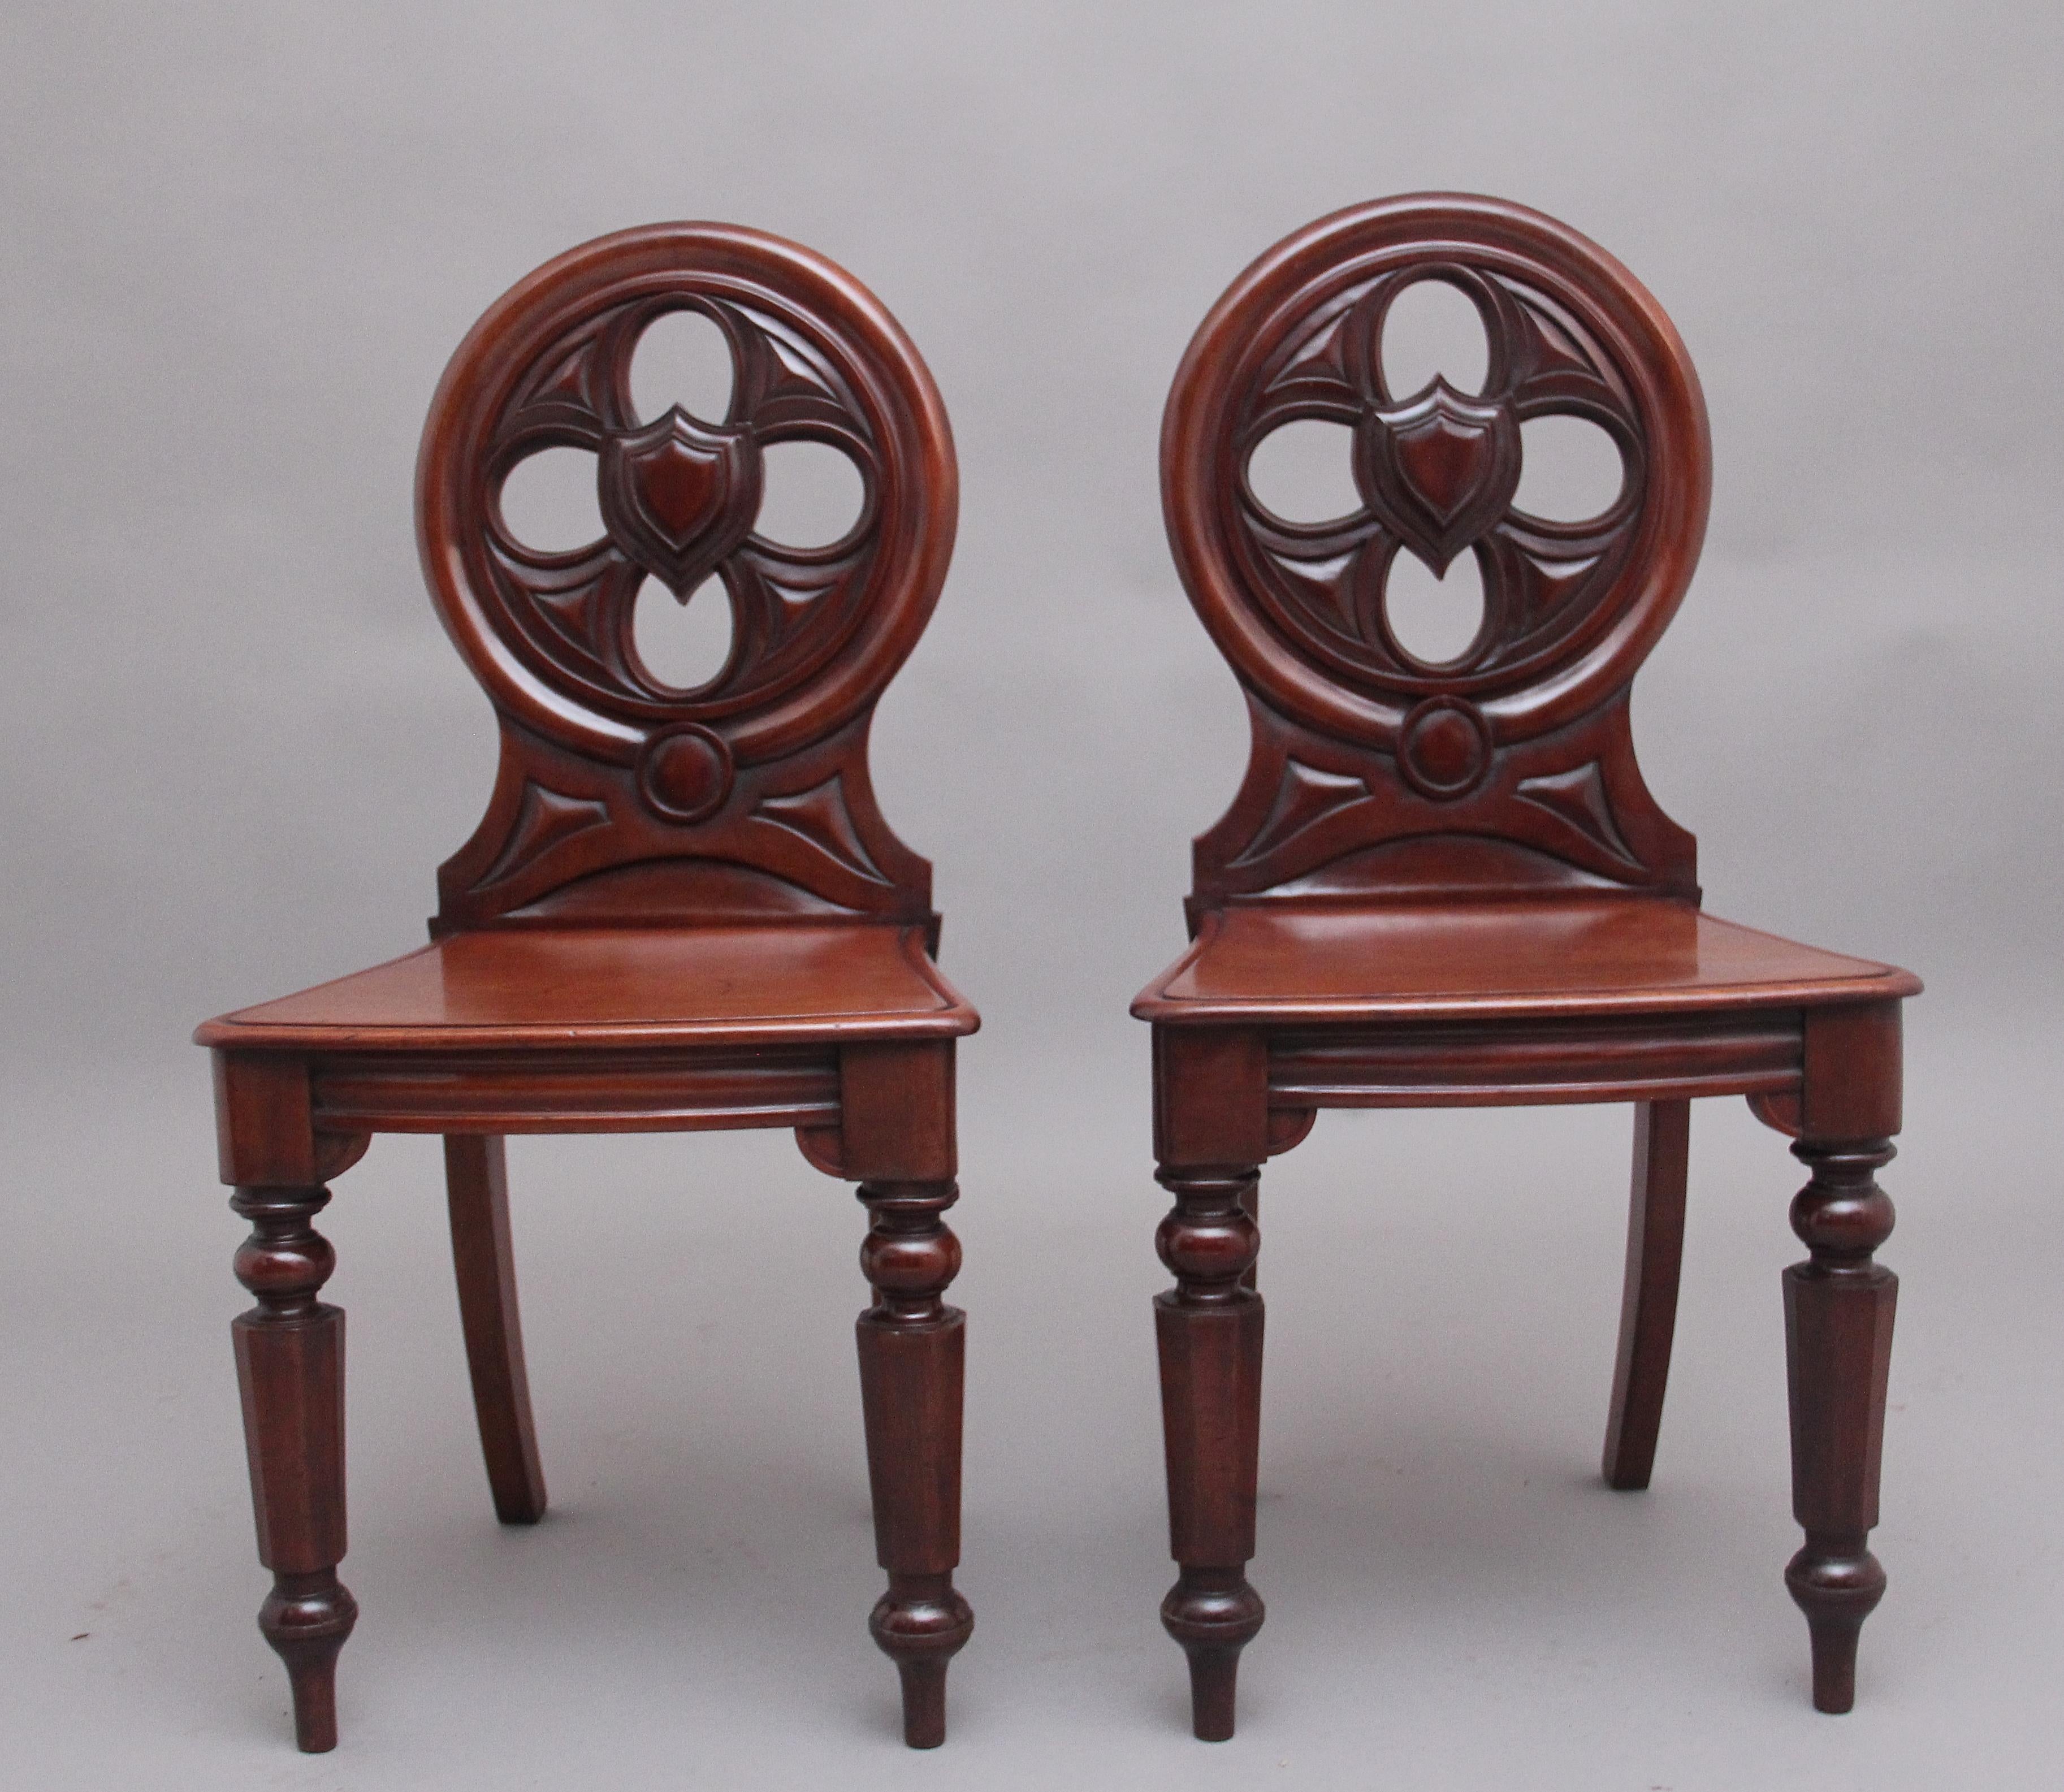 Ein Paar Mahagoni-Dielenstühle aus der Mitte des 19. Jahrhunderts mit kreisförmig geformten und profilierten Rückenlehnen, in deren Mitte sich Schildreserven befinden, harte Sitze mit schöner Figuration, gestützt auf ausgeschwungene Hinterbeine und